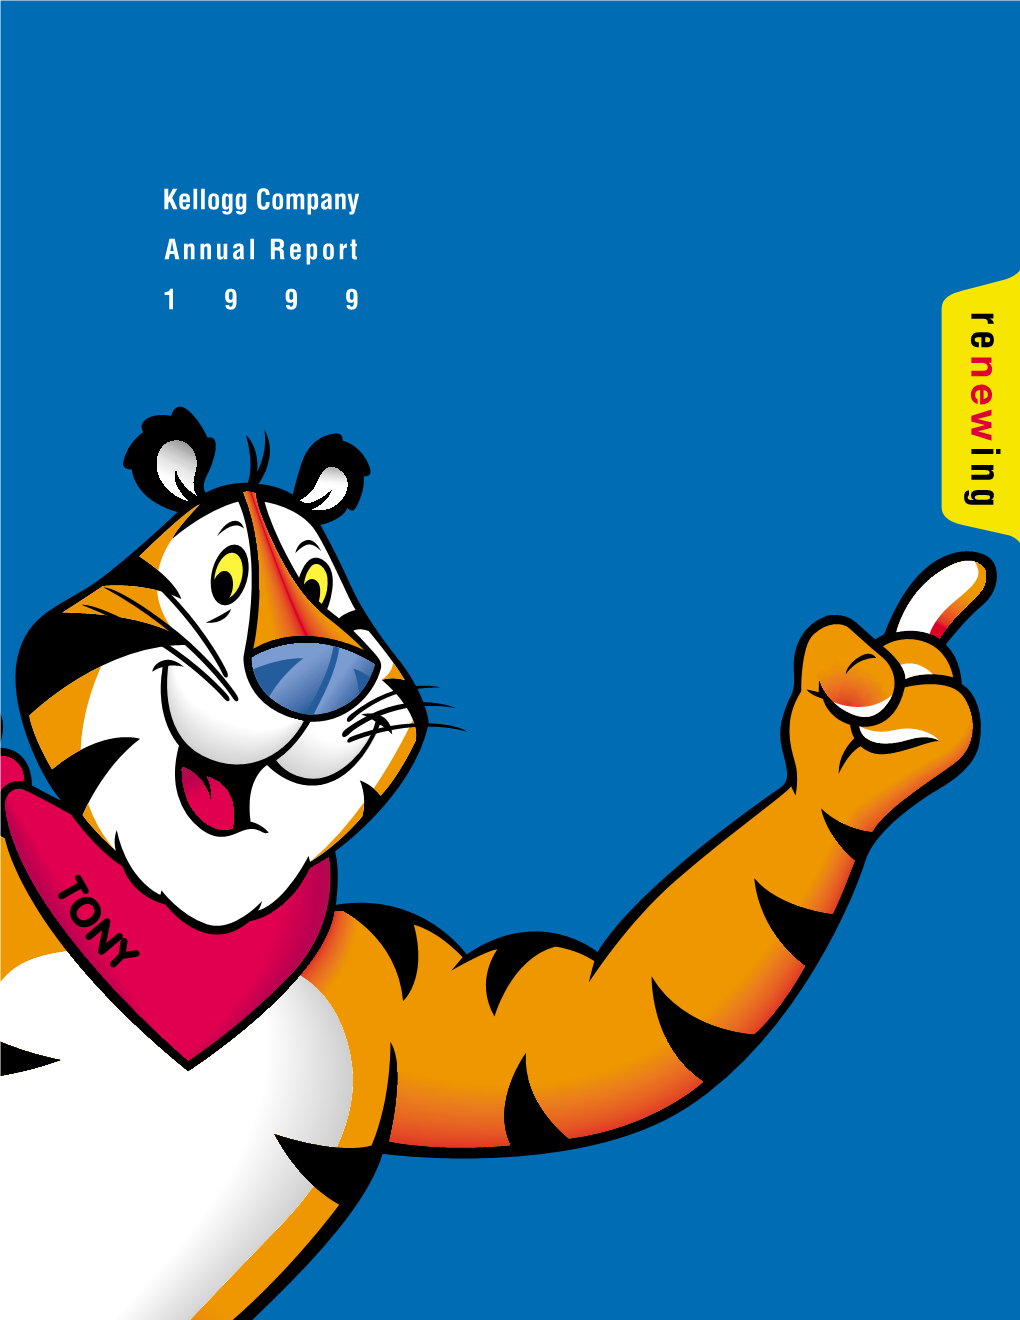 Kellogg Company Annual Report 1 9